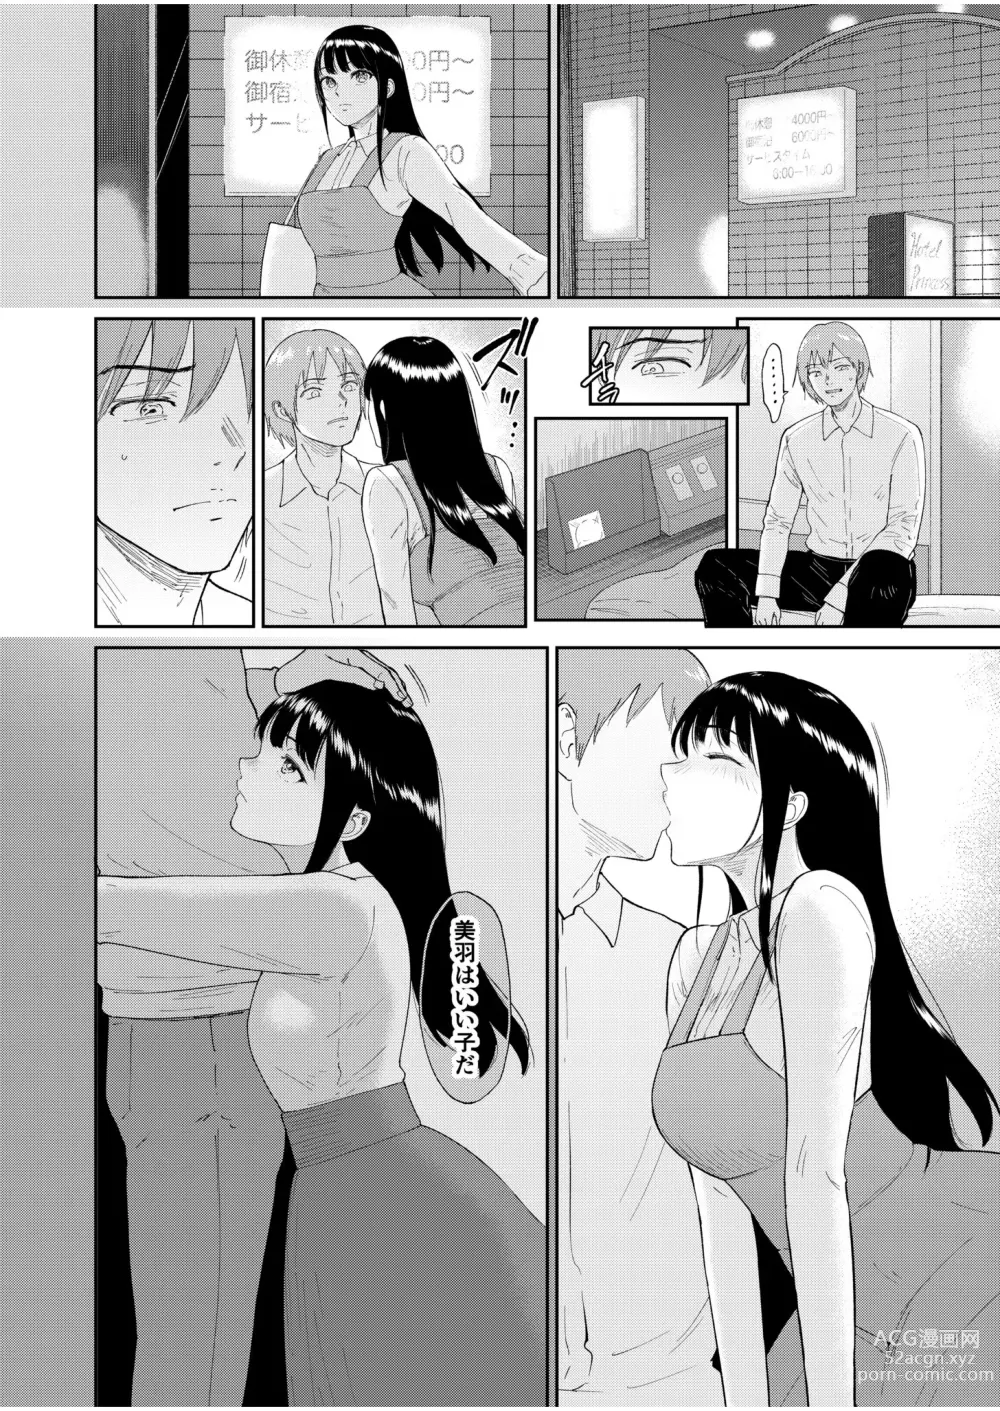 Page 146 of manga Iinarikko